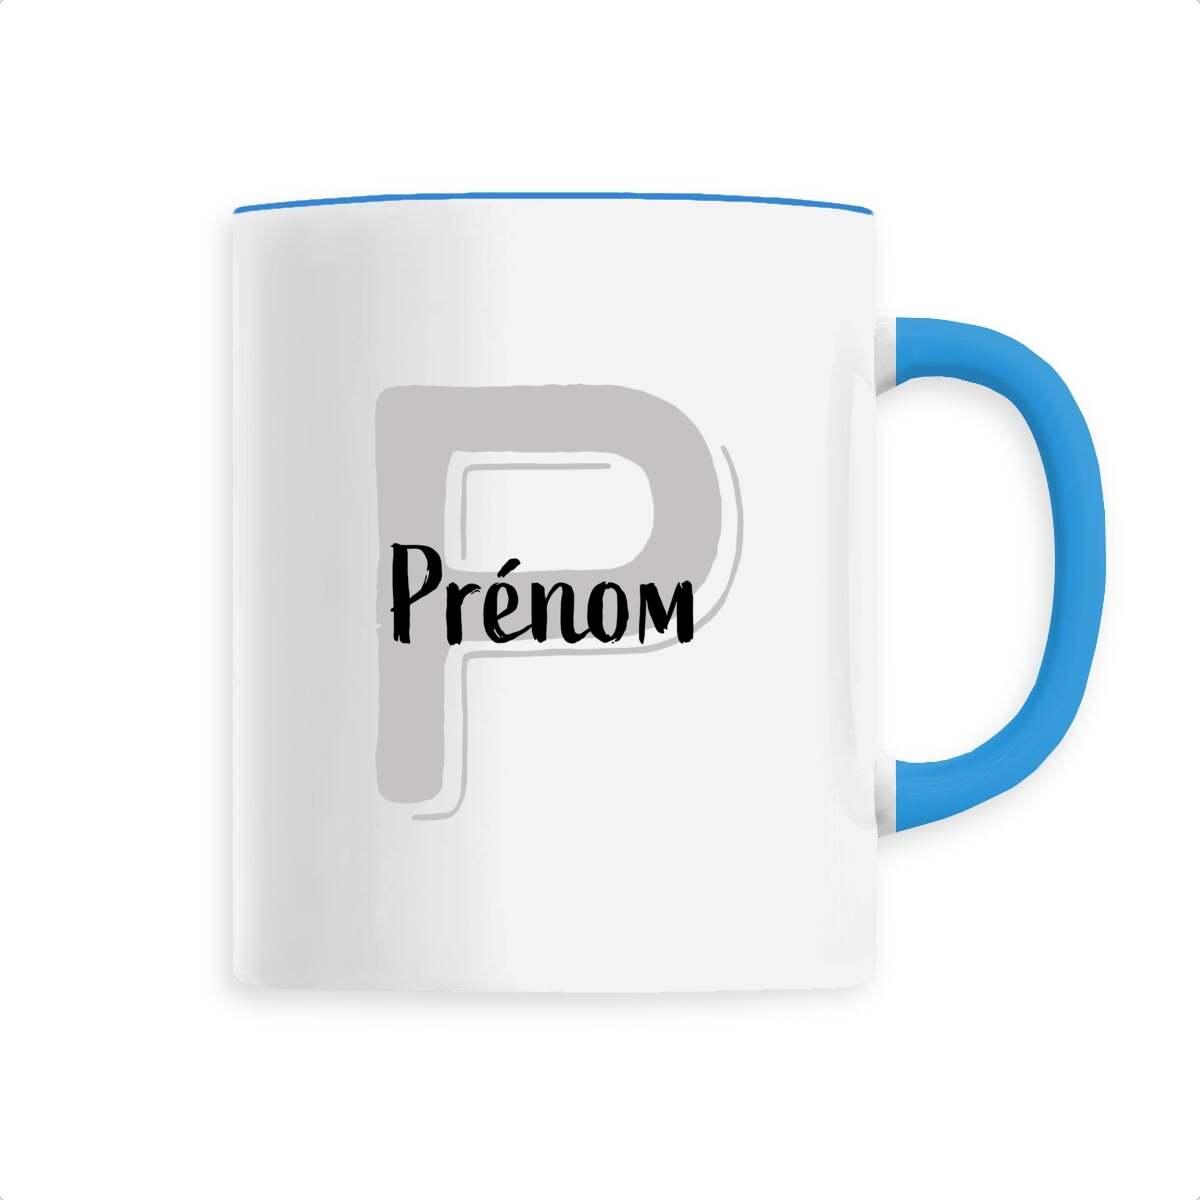 Mug en Céramique - Prénom, mug personnalisé avec prénom et initiale de T-French, mug avec prénom, mug personnalisable, mug prénom personnalisé, tasse personnalisé, mug prénom et initiale, mug avec prénom homme et femme, mug idée cadeau, mug prénom, mug personnalisé bleu